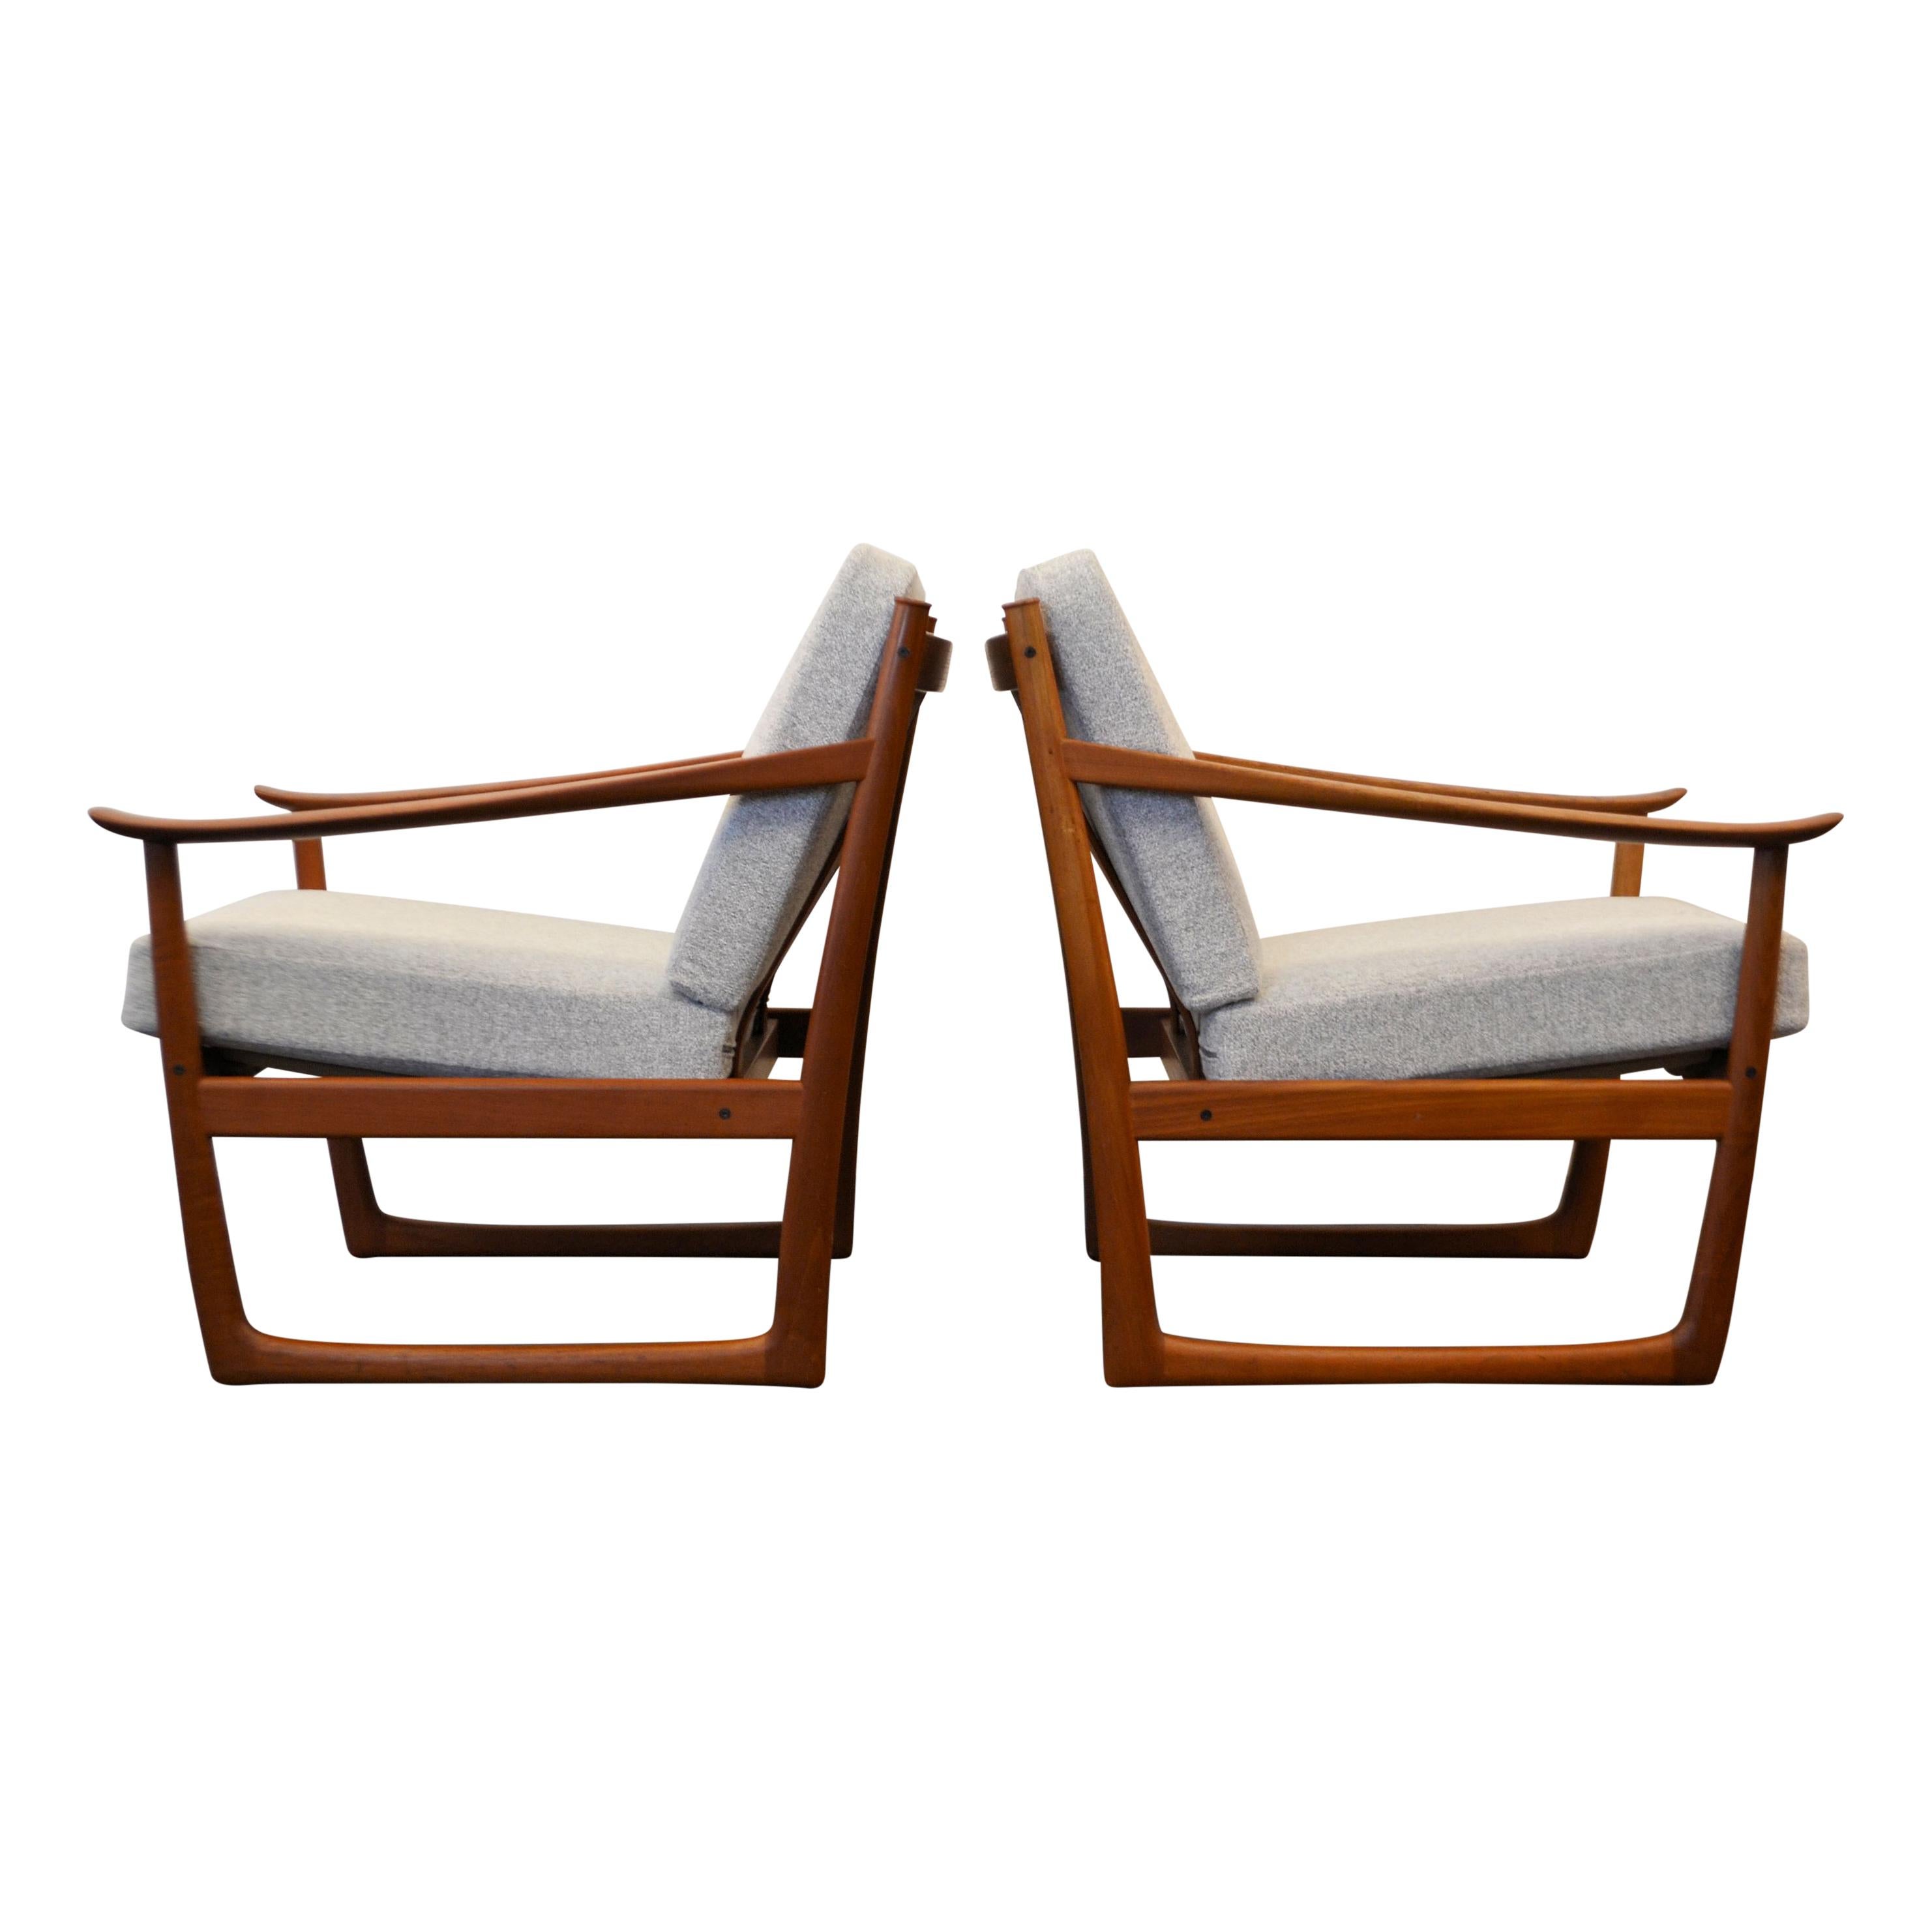 Set van 2 Mid-Century Modern Deense design teak fauteuils, model FD-130. Deze fauteuils zijn een prachtig ontwerp van het Deense duo Peter Hvidt & Orla Mølgaard Nielsen voor France & Son in de jaren 60. De slede poten zijn kenmerkend evenals de iets